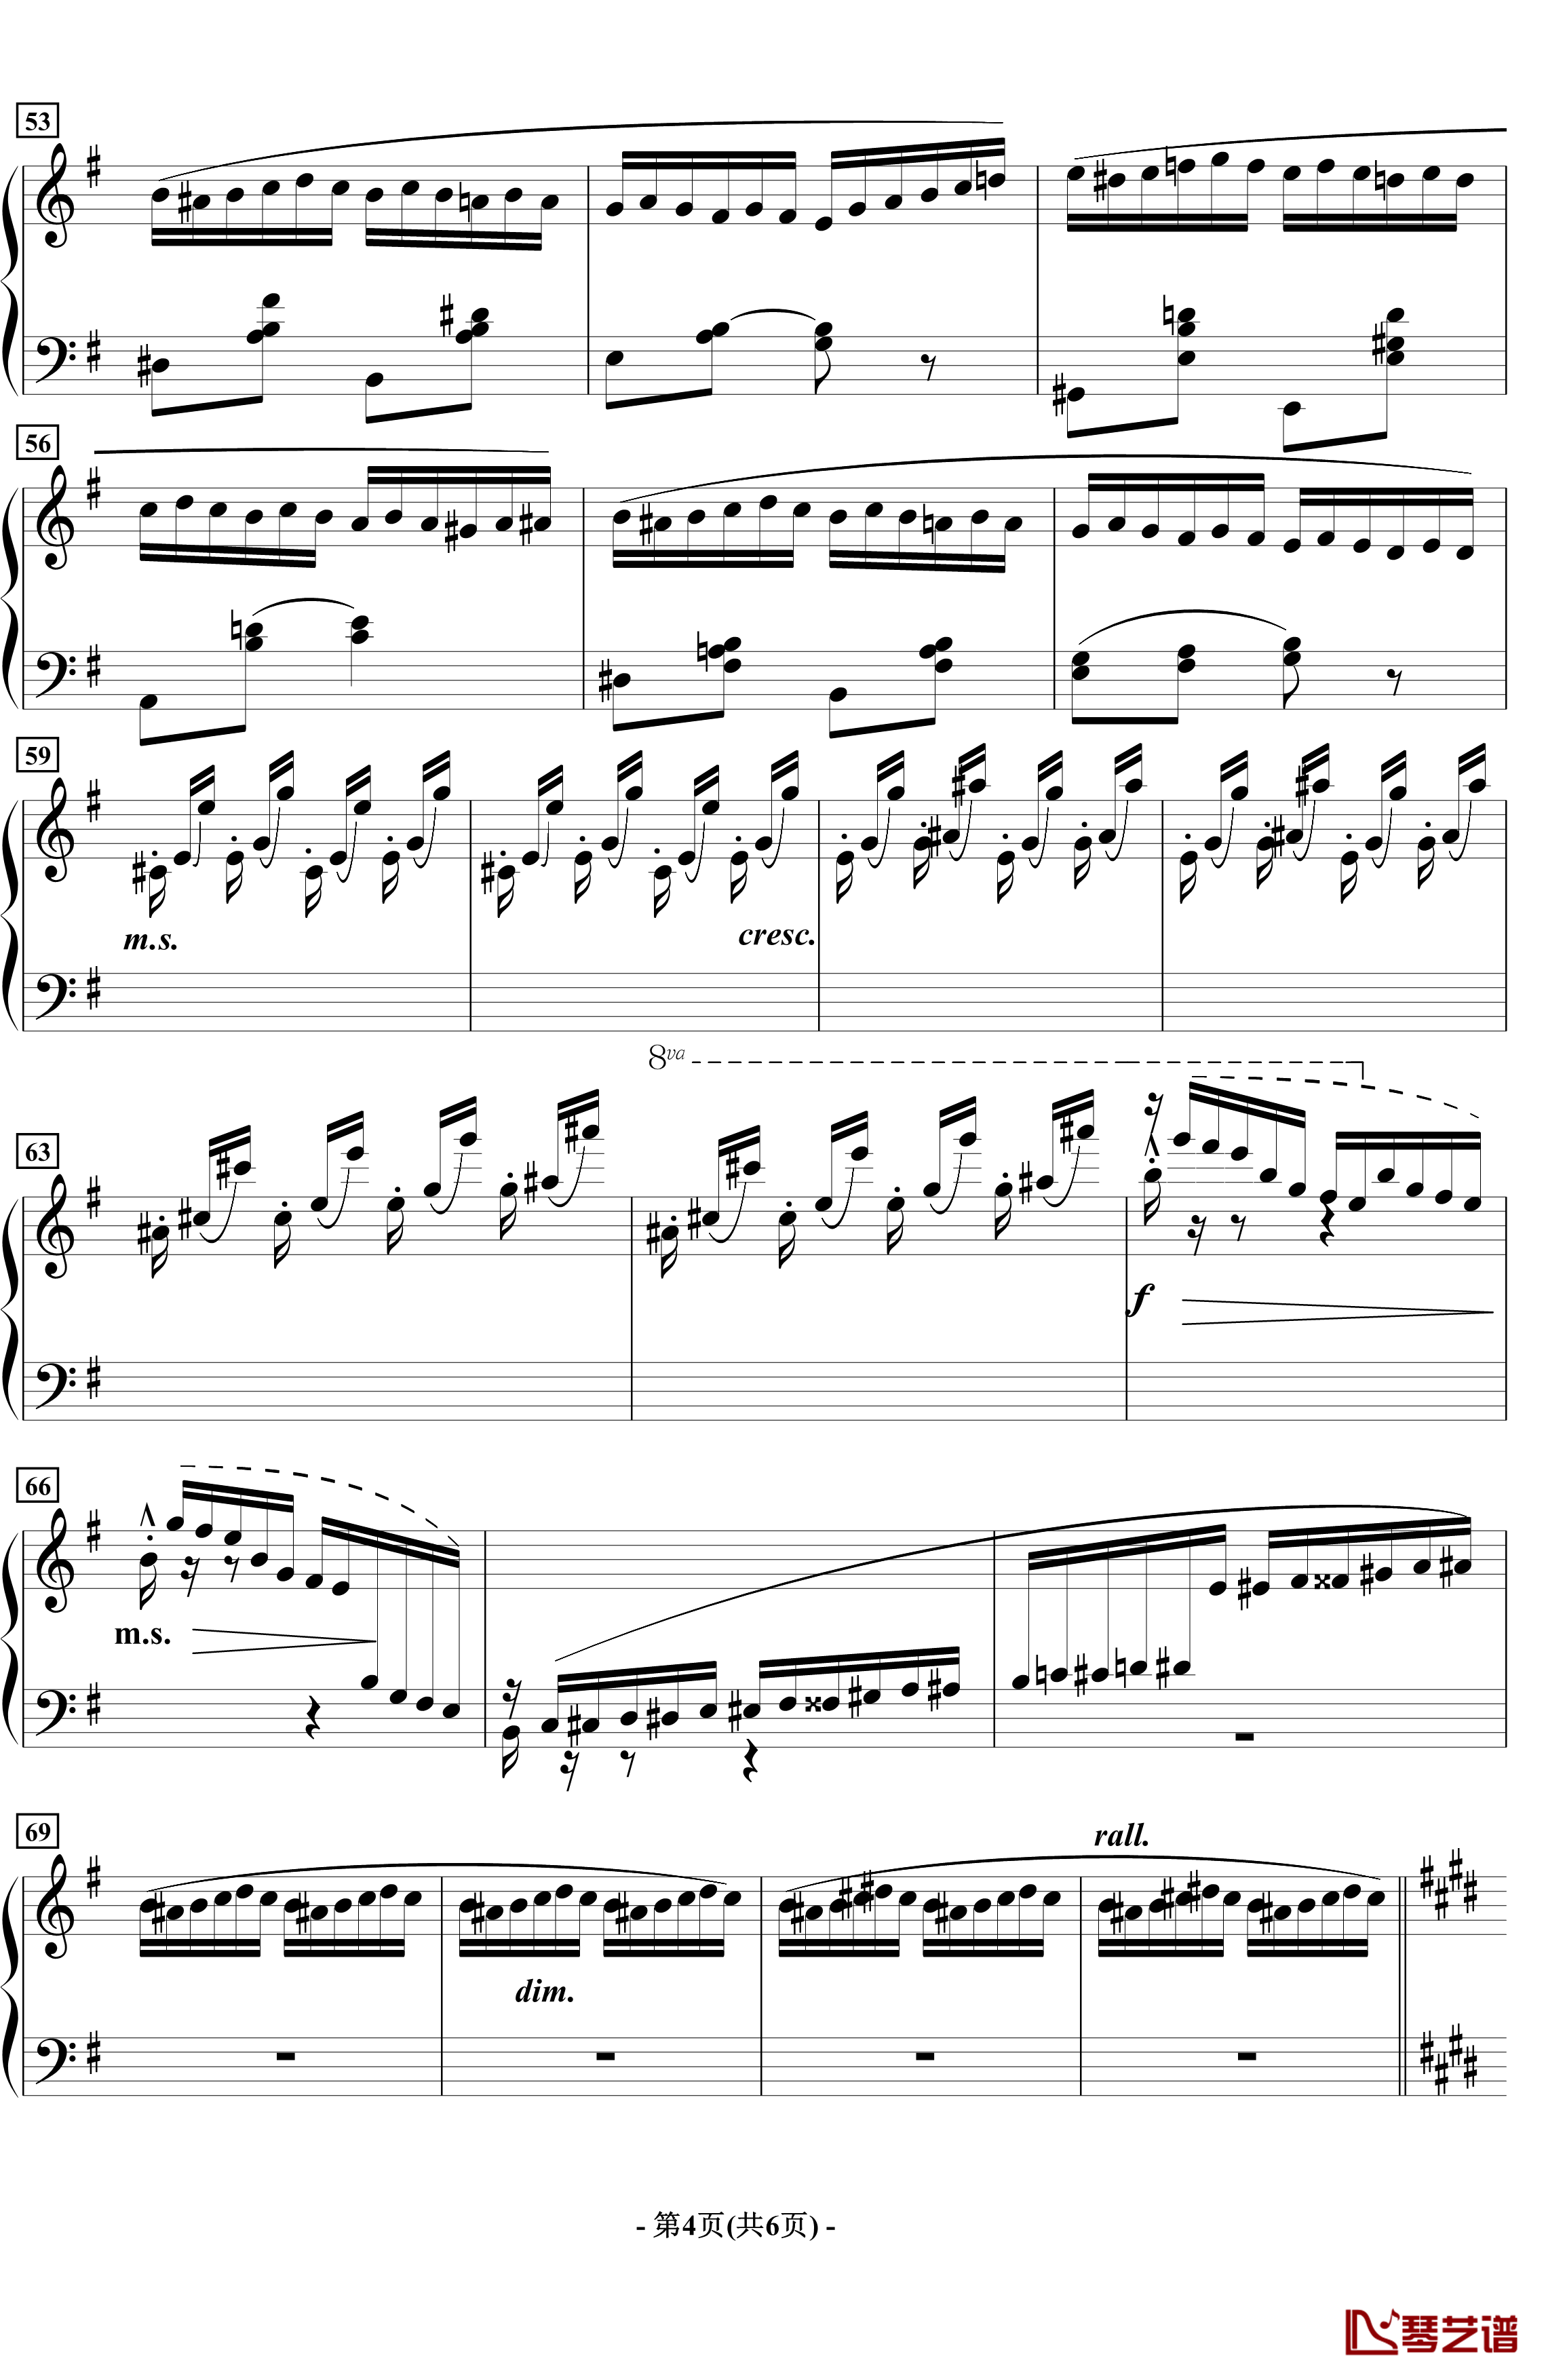 蝴蝶钢琴谱-音乐会练习曲-拉瓦列4